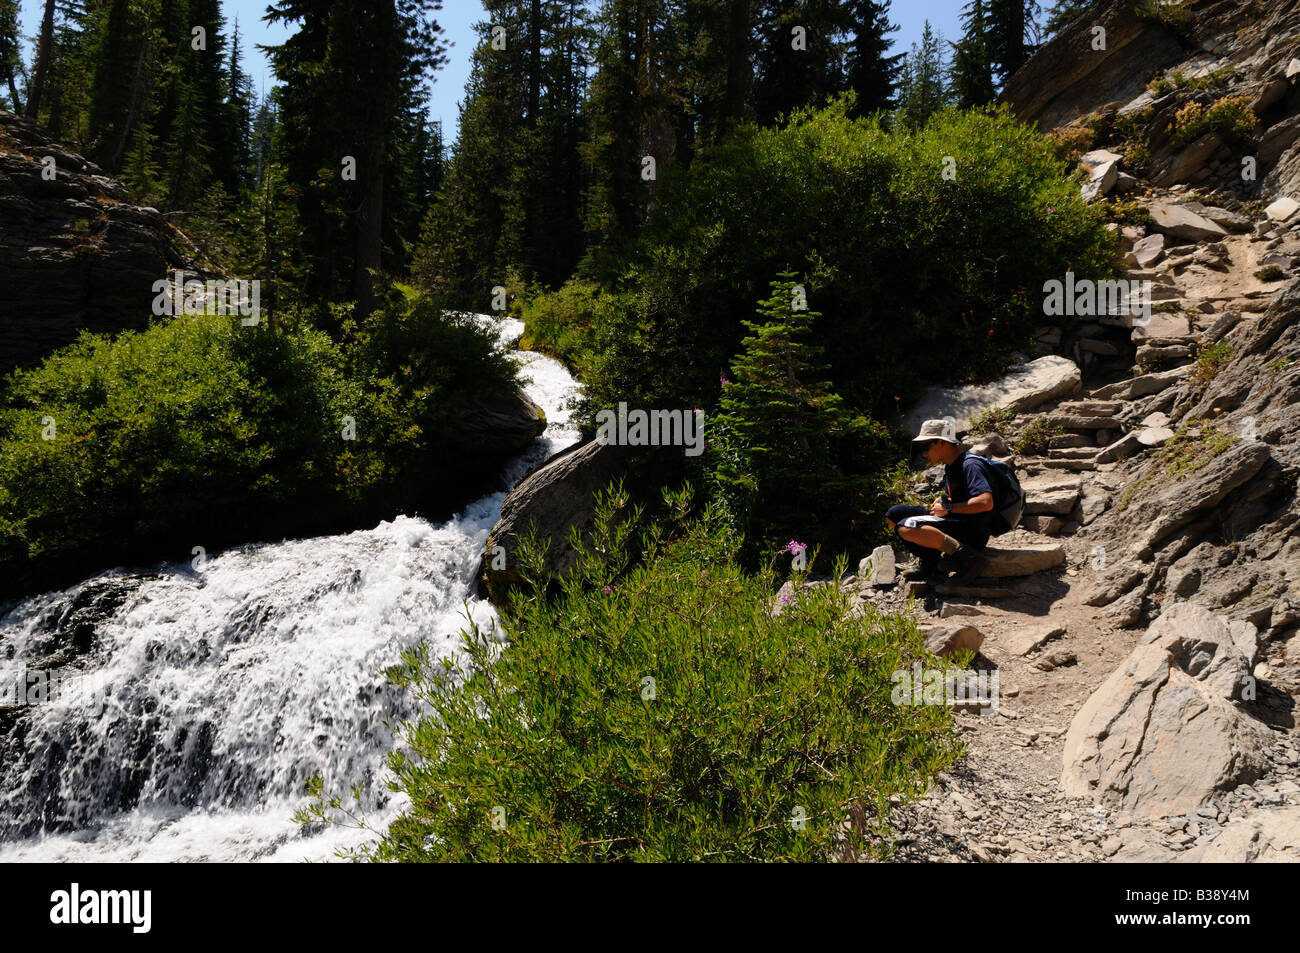 Un ruisseau cascades le long d'un sentier de montagne. Lassen Volcanic National Park, California, USA. Banque D'Images